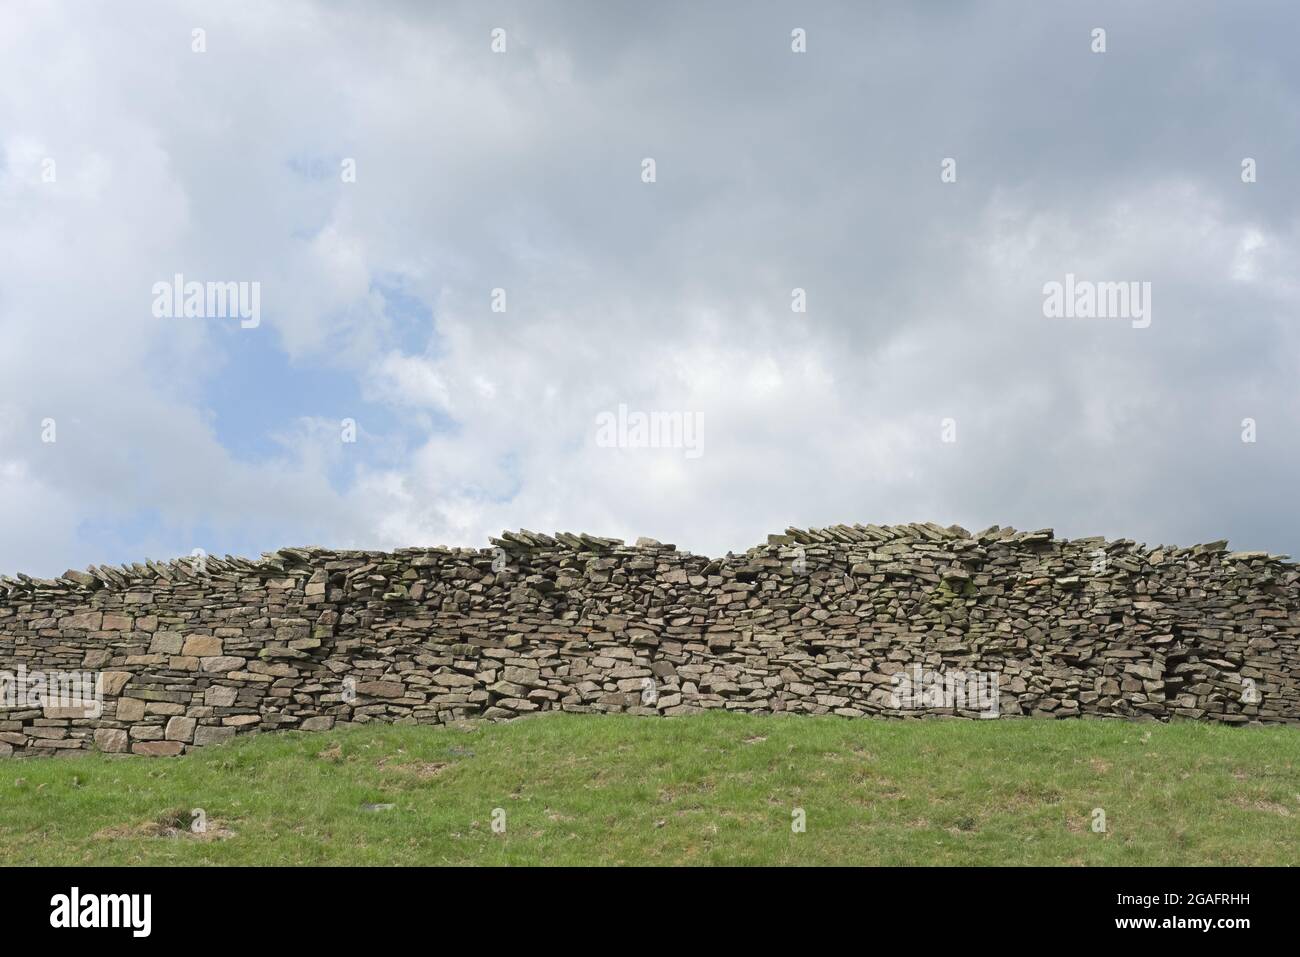 Grand mur en pierre sèche et fond bleu ciel fortement nuageux. Thème agricole et rural, champ vert herbacé en premier plan. Beaucoup d'espace de copie. Banque D'Images